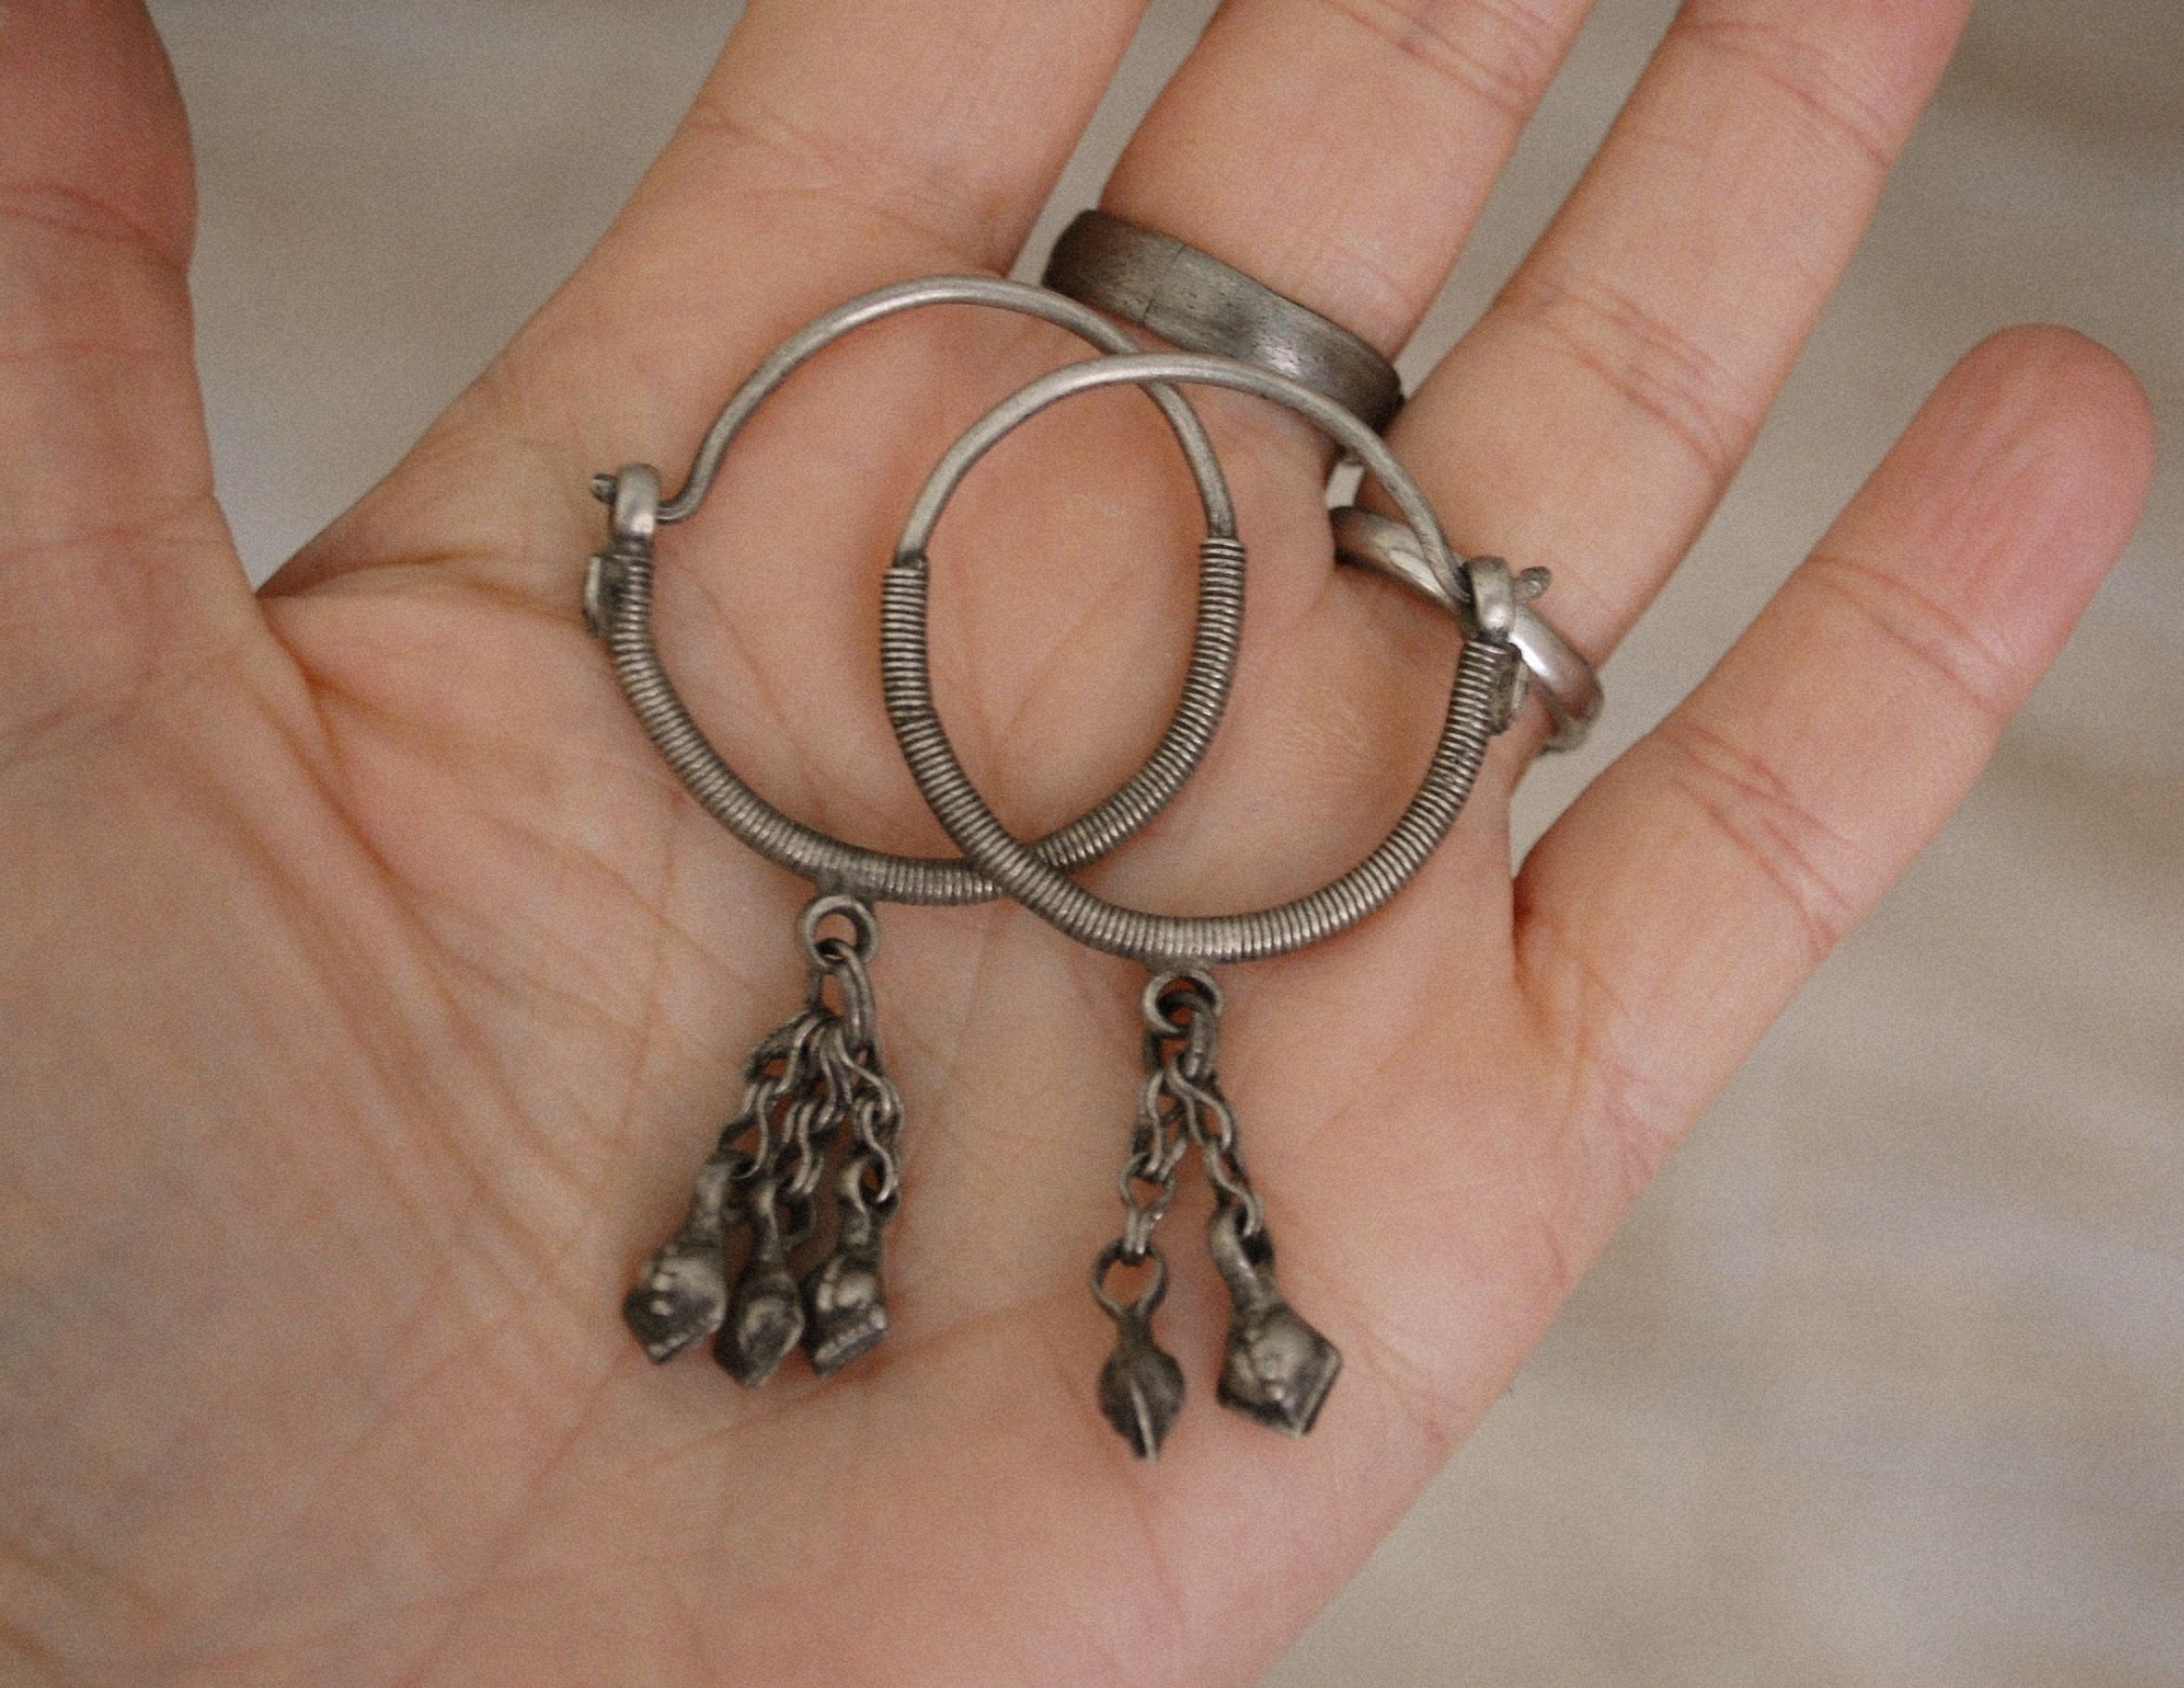 Afghani Hoop Earrings with Tassels - Kuchi Hoop Earrings - Tribal Hoop Earrings - Afghani Earrings - Afghani Jewelry - Ethnic Hoop Earrings